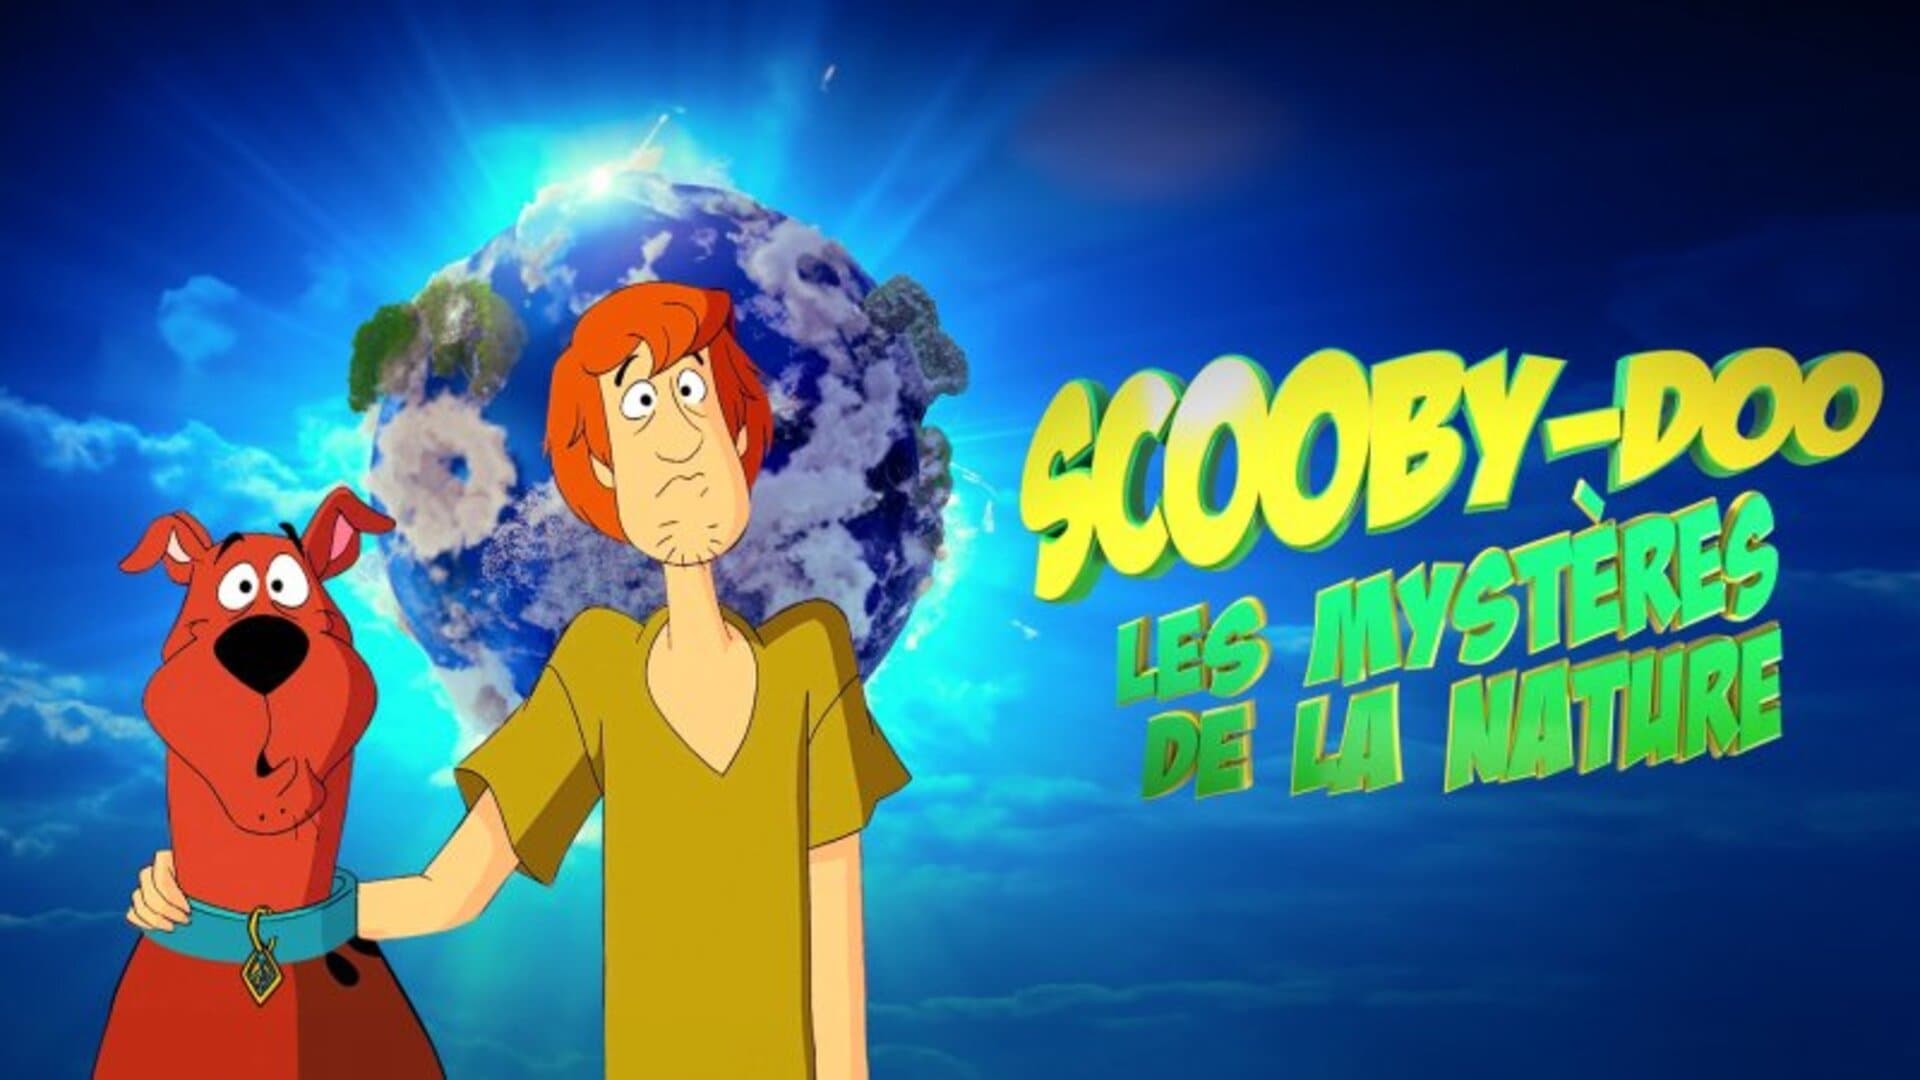 Scooby-Doo et les mystères de la nature